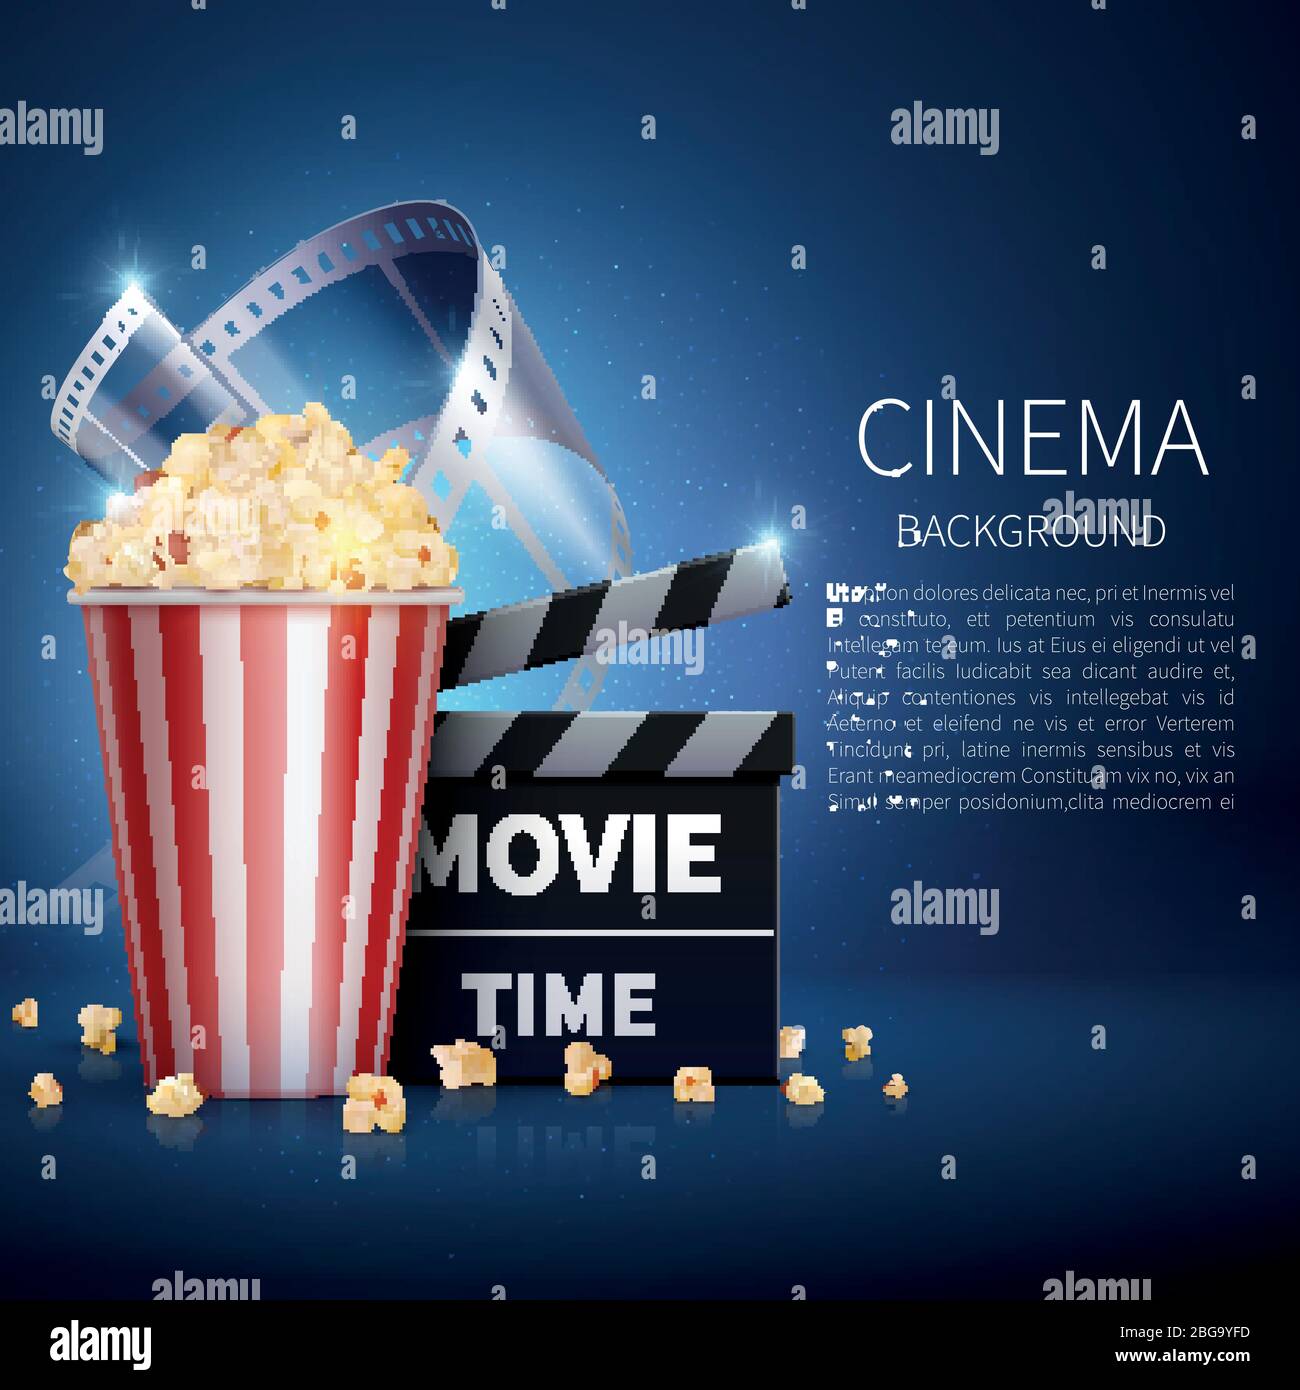 Film cinéma en 3 dimensions avec pop-corn et film vintage. Affiche de cinéma rétro. Illustration du cinéma en continu et du film Illustration de Vecteur